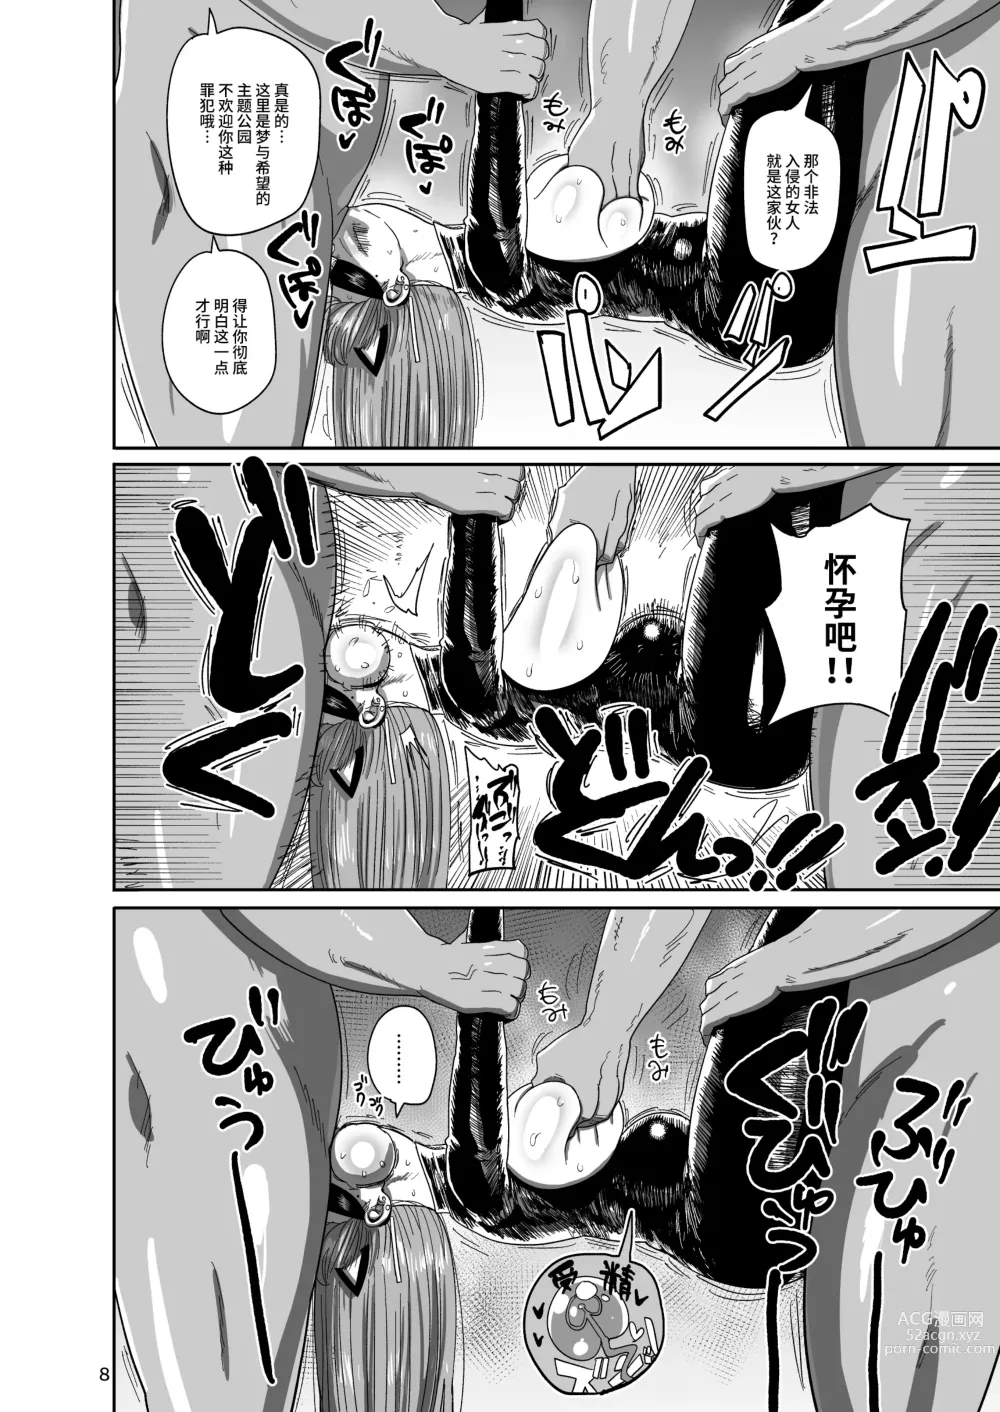 Page 7 of doujinshi Nandemo Chousa Mama Kuma Shizue ha TEIKO ga dekinai